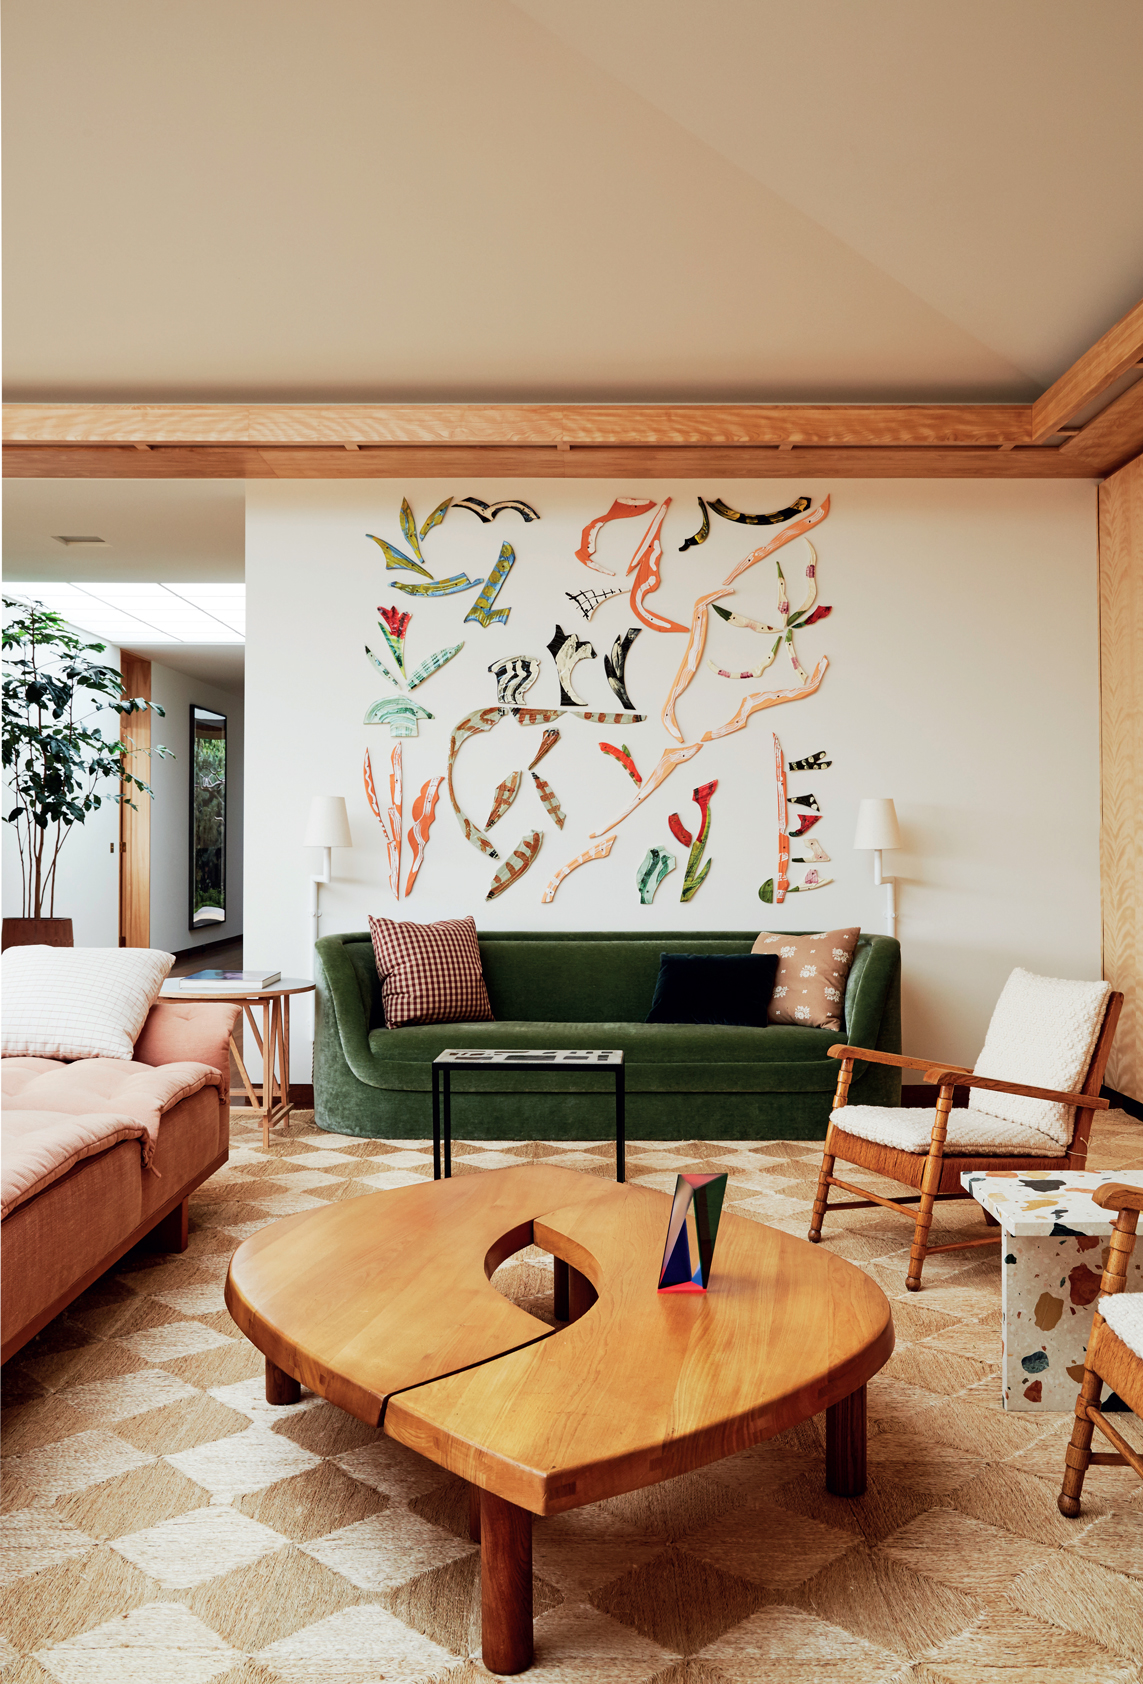 Phòng đẹp tuyệt đẹp với 2 bộ ghế sofa màu xanh lá cây là hồng phấn, bức tường trắng được trang trí nổi bật và chiếc bàn nước có thiết kế độc đáo.